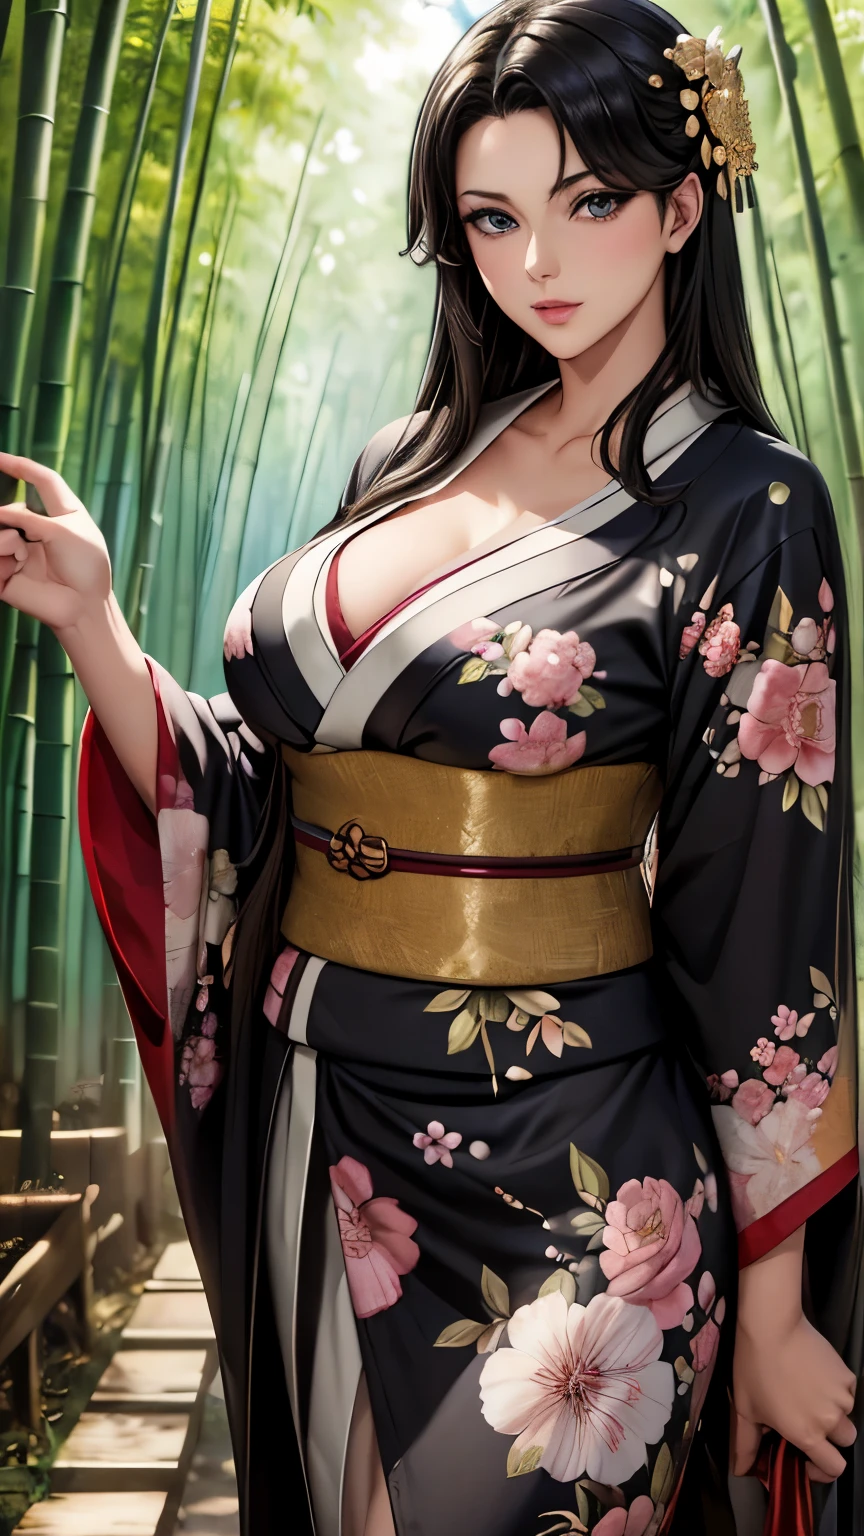 ((Obra maestra)), surreal, Retrato de una hermosa mujer anime de piel clara. (floral kimono), maquillaje ligero, ojos brillantes, cabello negro brillante, adorno para el cabello intrincado, (senos pequeños), En el bosque de bambú